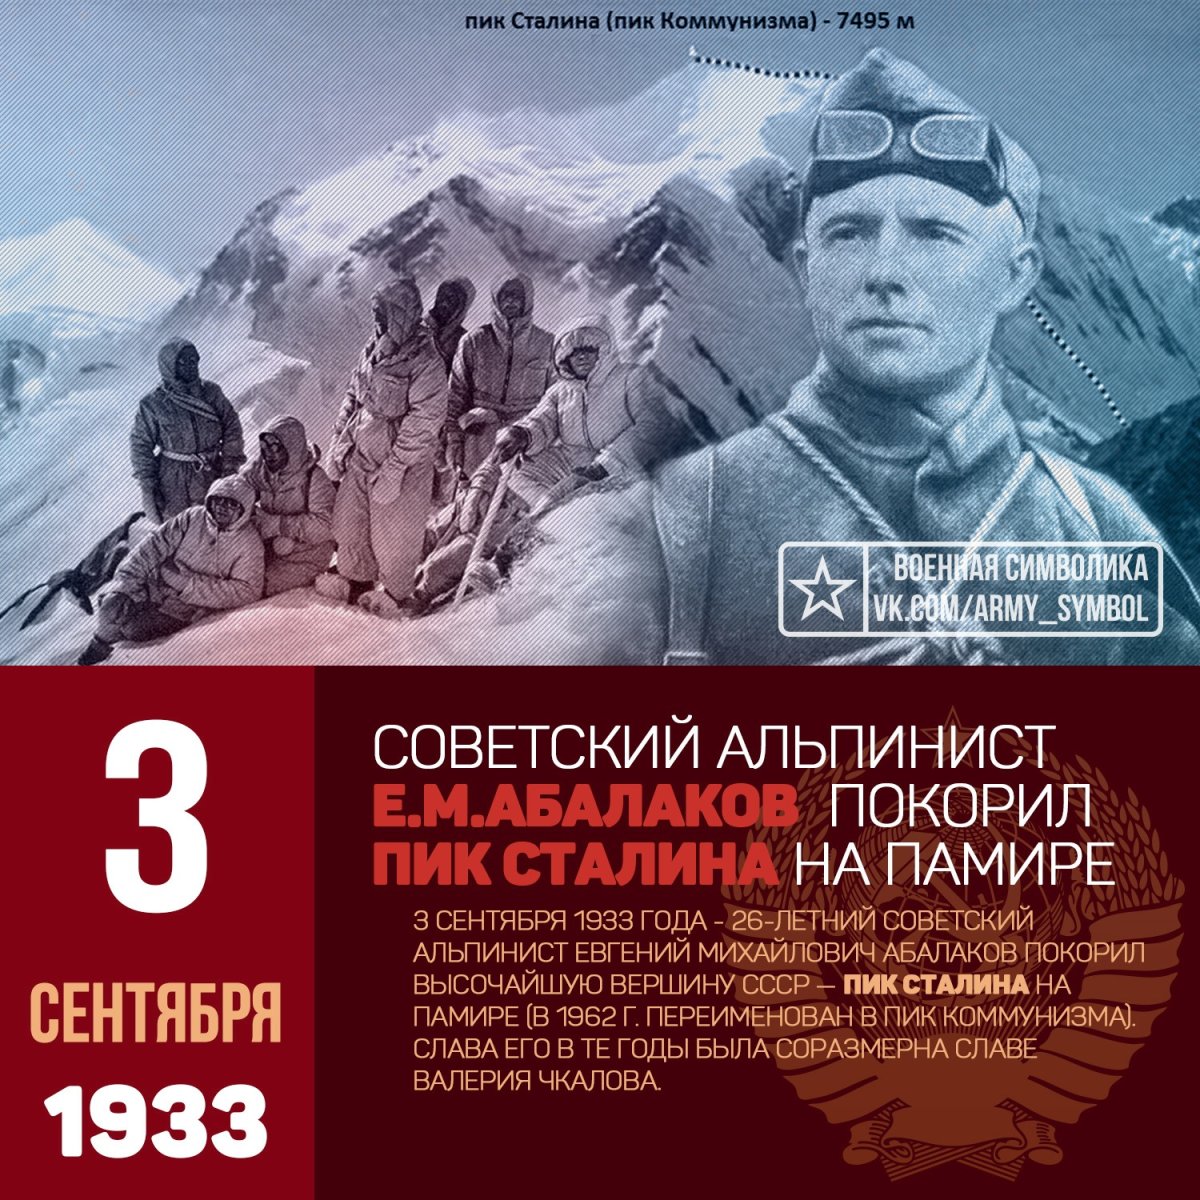 3 Сентября 1933 Евгений Абалаков достиг вершины пика Сталина